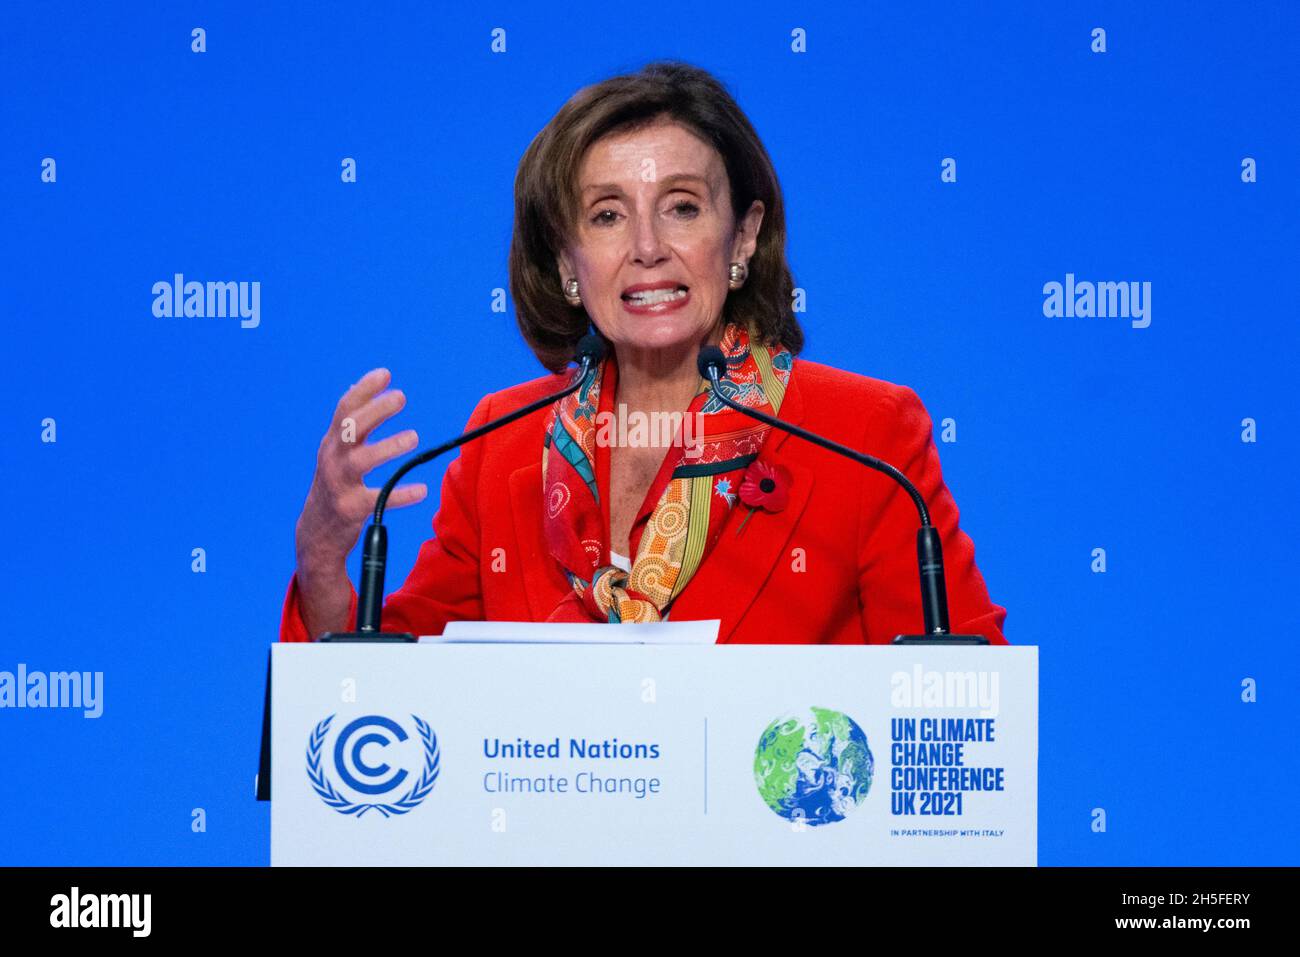 Glasgow, Scozia, Regno Unito. 9 novembre 2021. Giorno dieci del vertice COP26 sul clima. Nancy Pelosi, Presidente della Camera dei rappresentanti degli Stati Uniti, parla alla conferenza stampa. Iain Masterton/Alamy Live News. Foto Stock